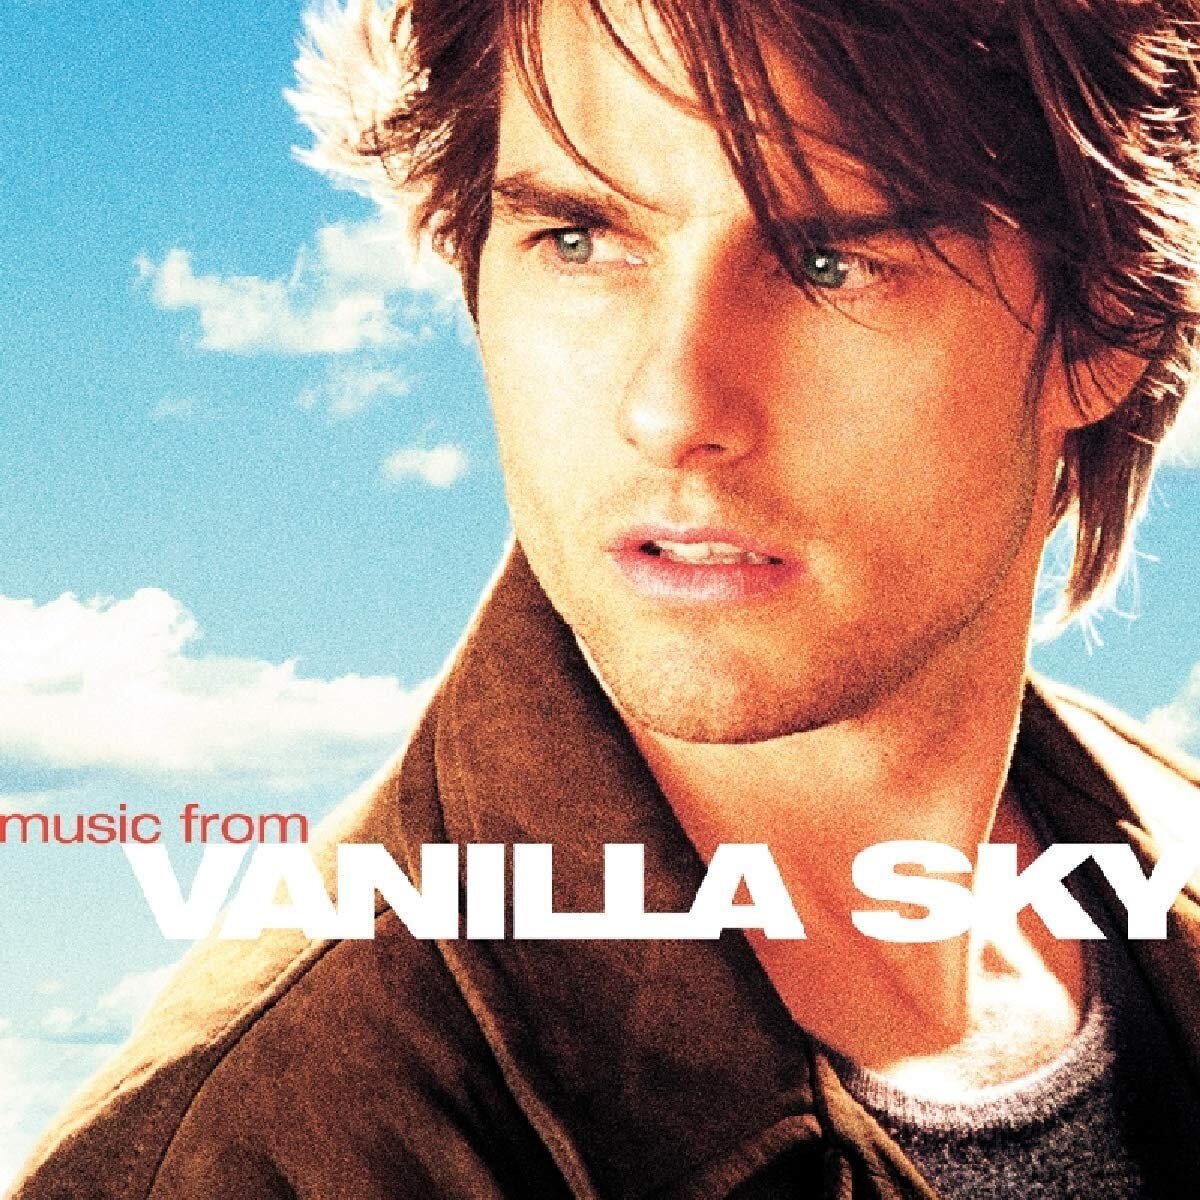 VanillaSky_Soundtrack.jpg